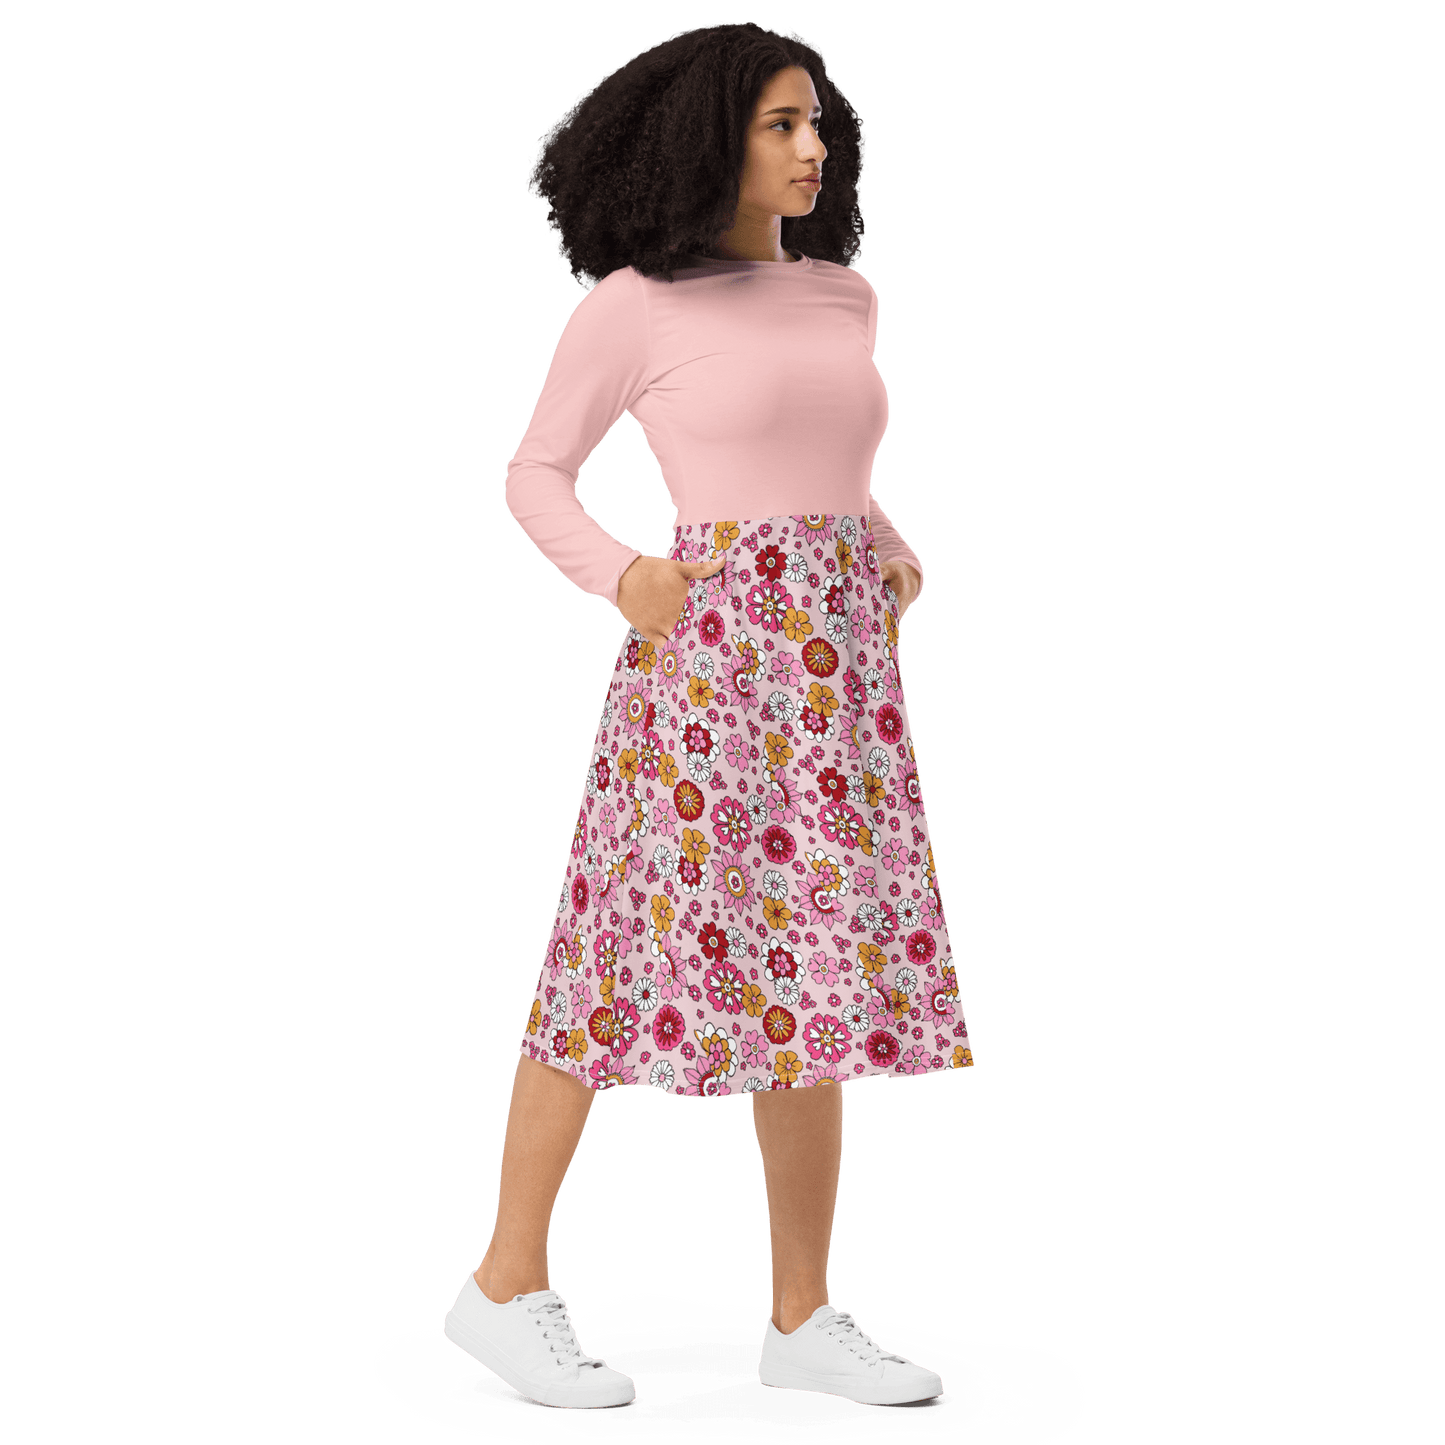 Pink Floral Skirt Midi Dress - L & M Kee, LLC